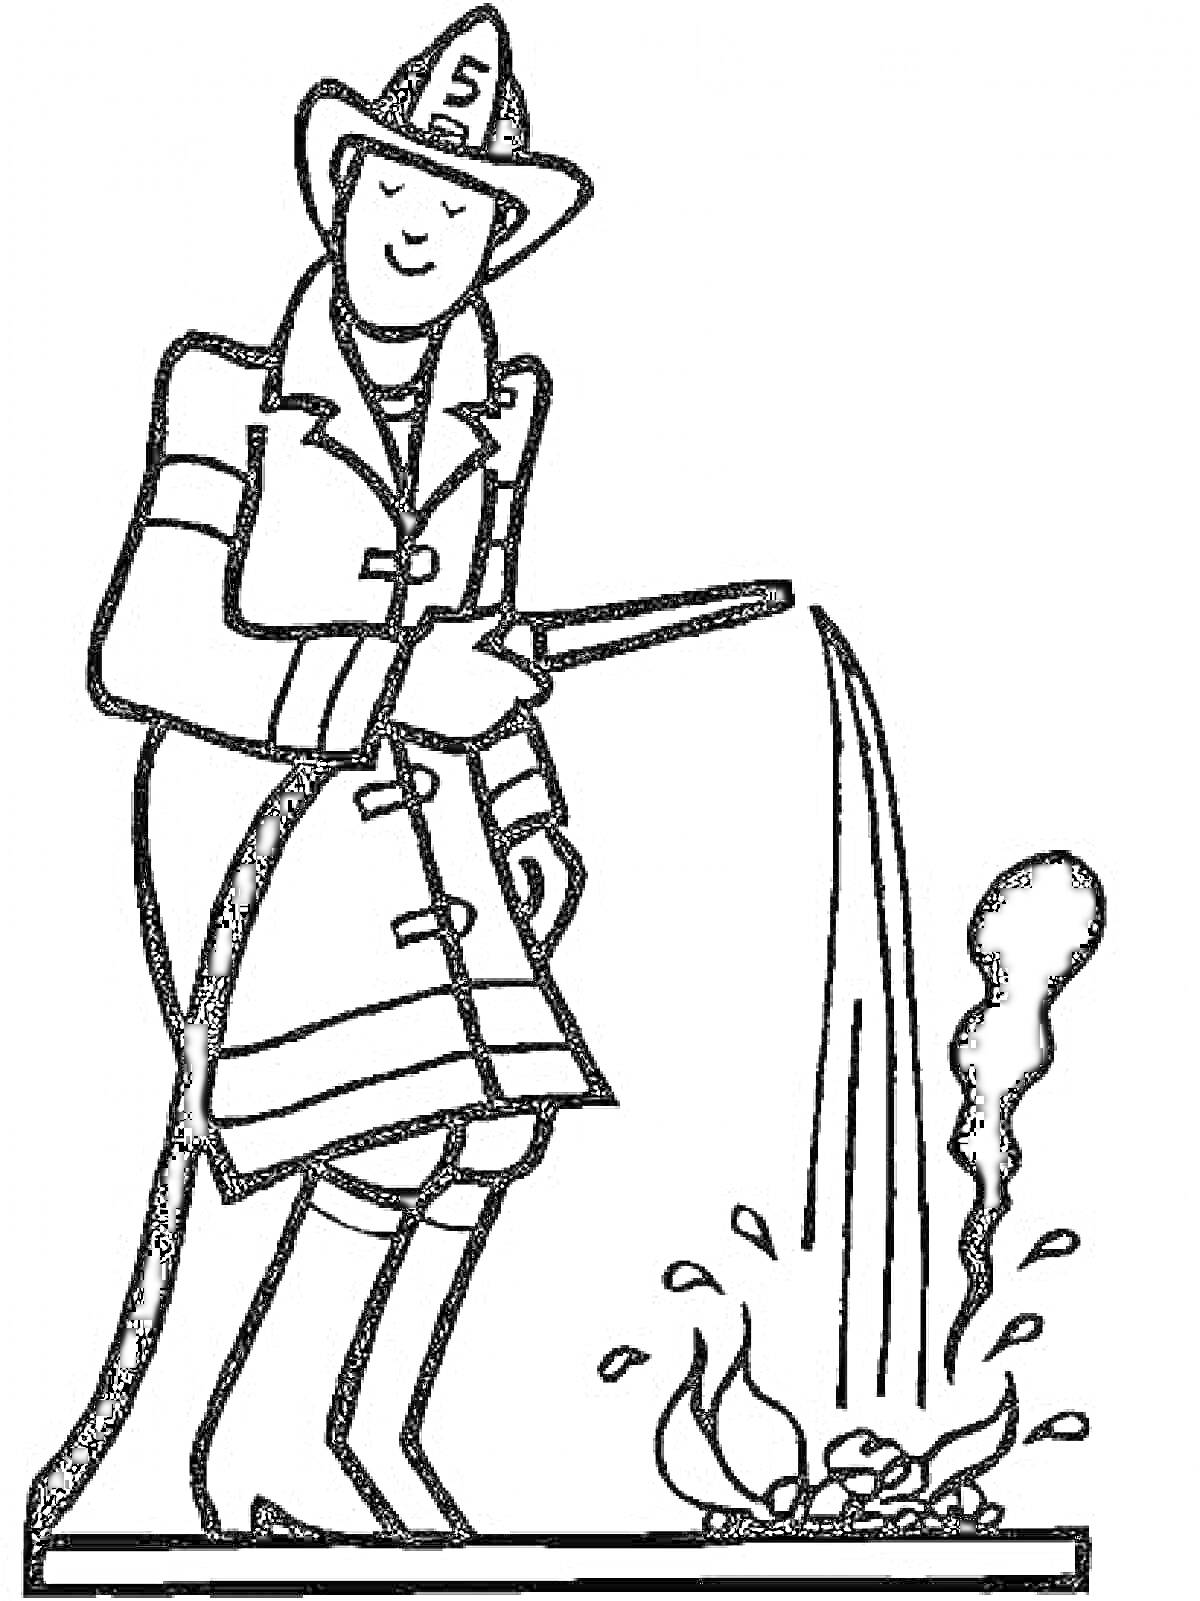 Раскраска Пожарный тушит костёр, одет в каску с номером, пожарный плащ, сапоги, держит шланг с водой вокруг открытого огня с дымом